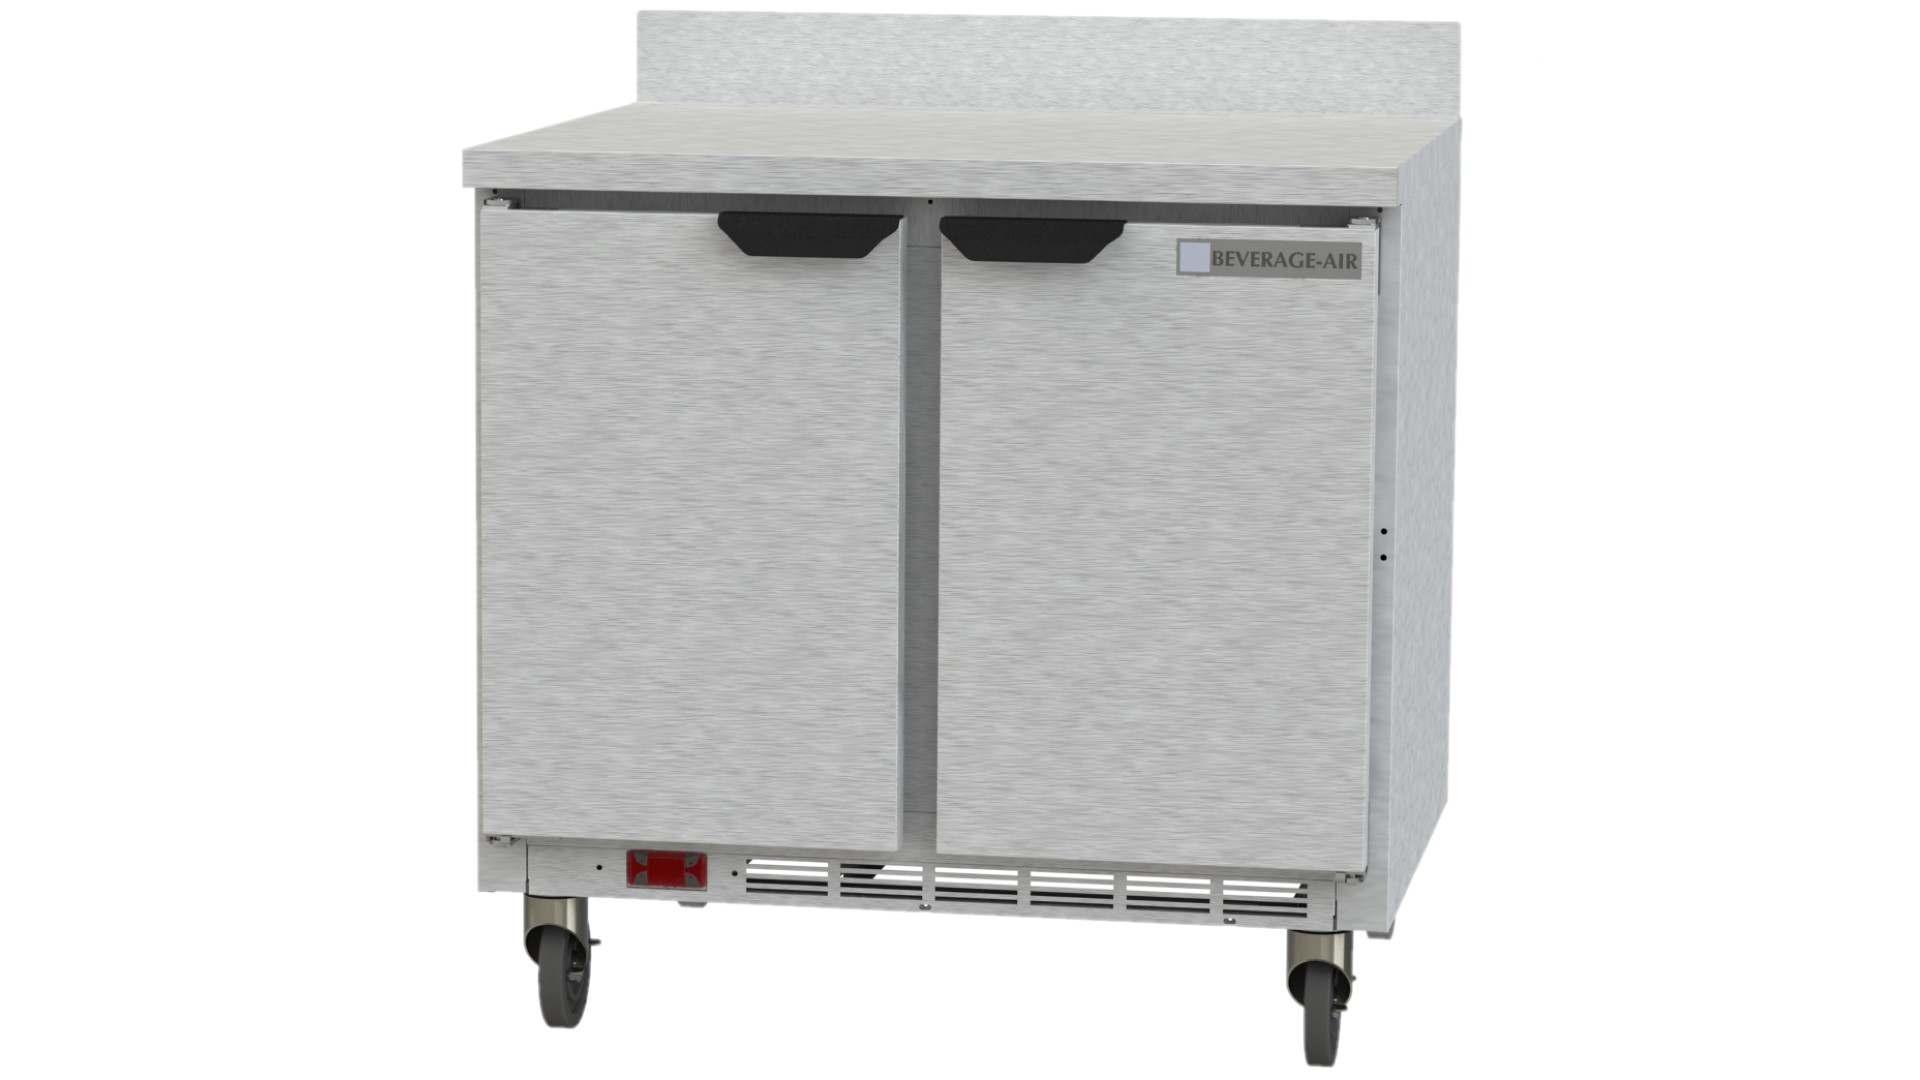 Beverage Air WTR36AHC Worktop Refrigerator 36"